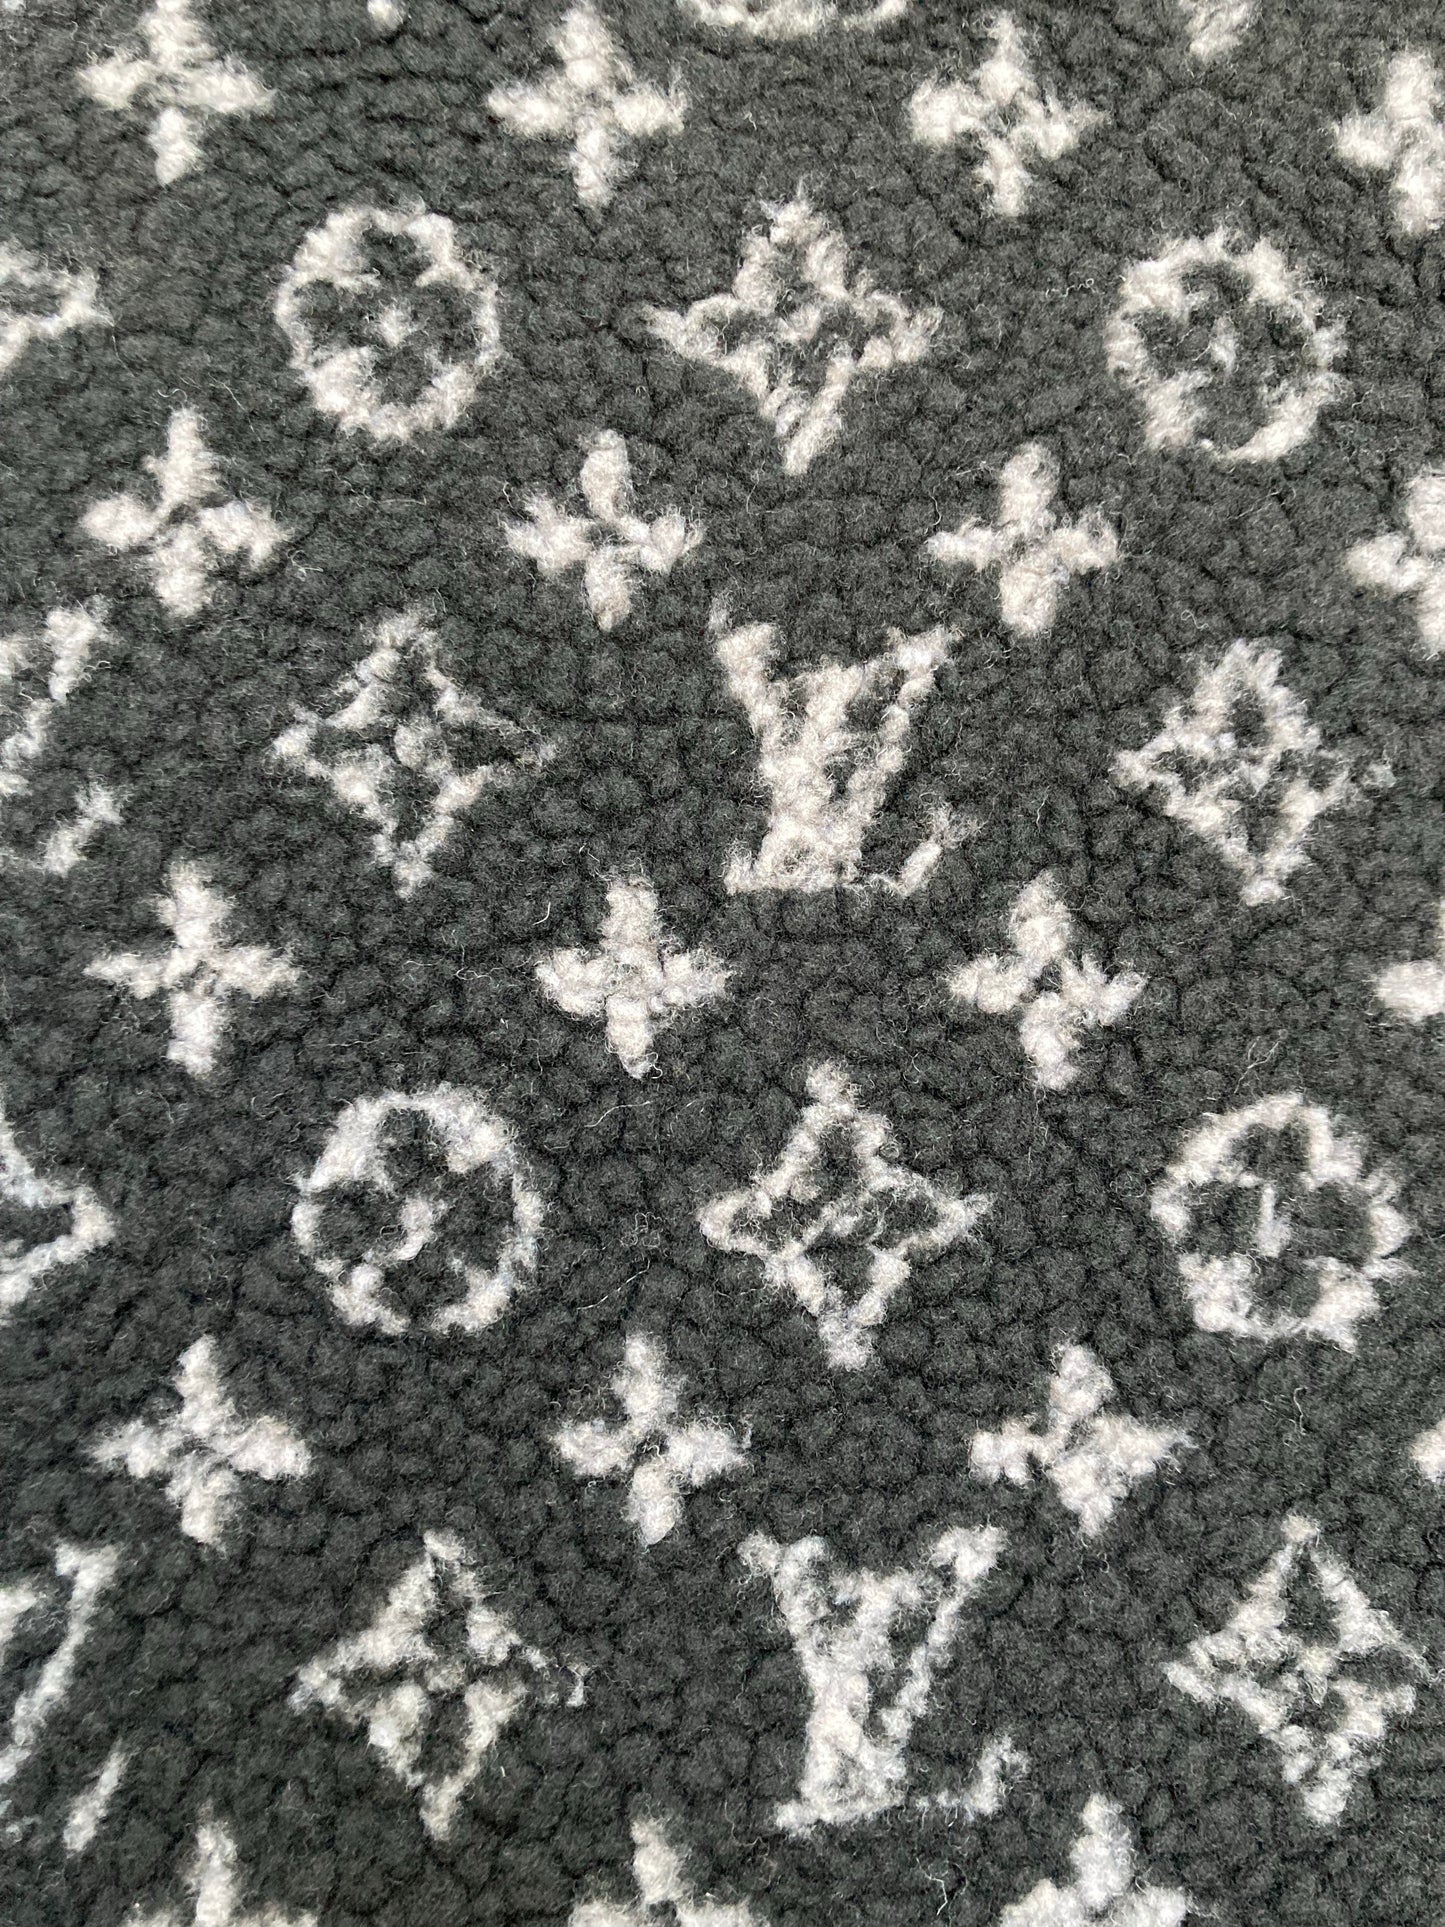 Black Furry Cozy LV Teddy Flannel Fabric